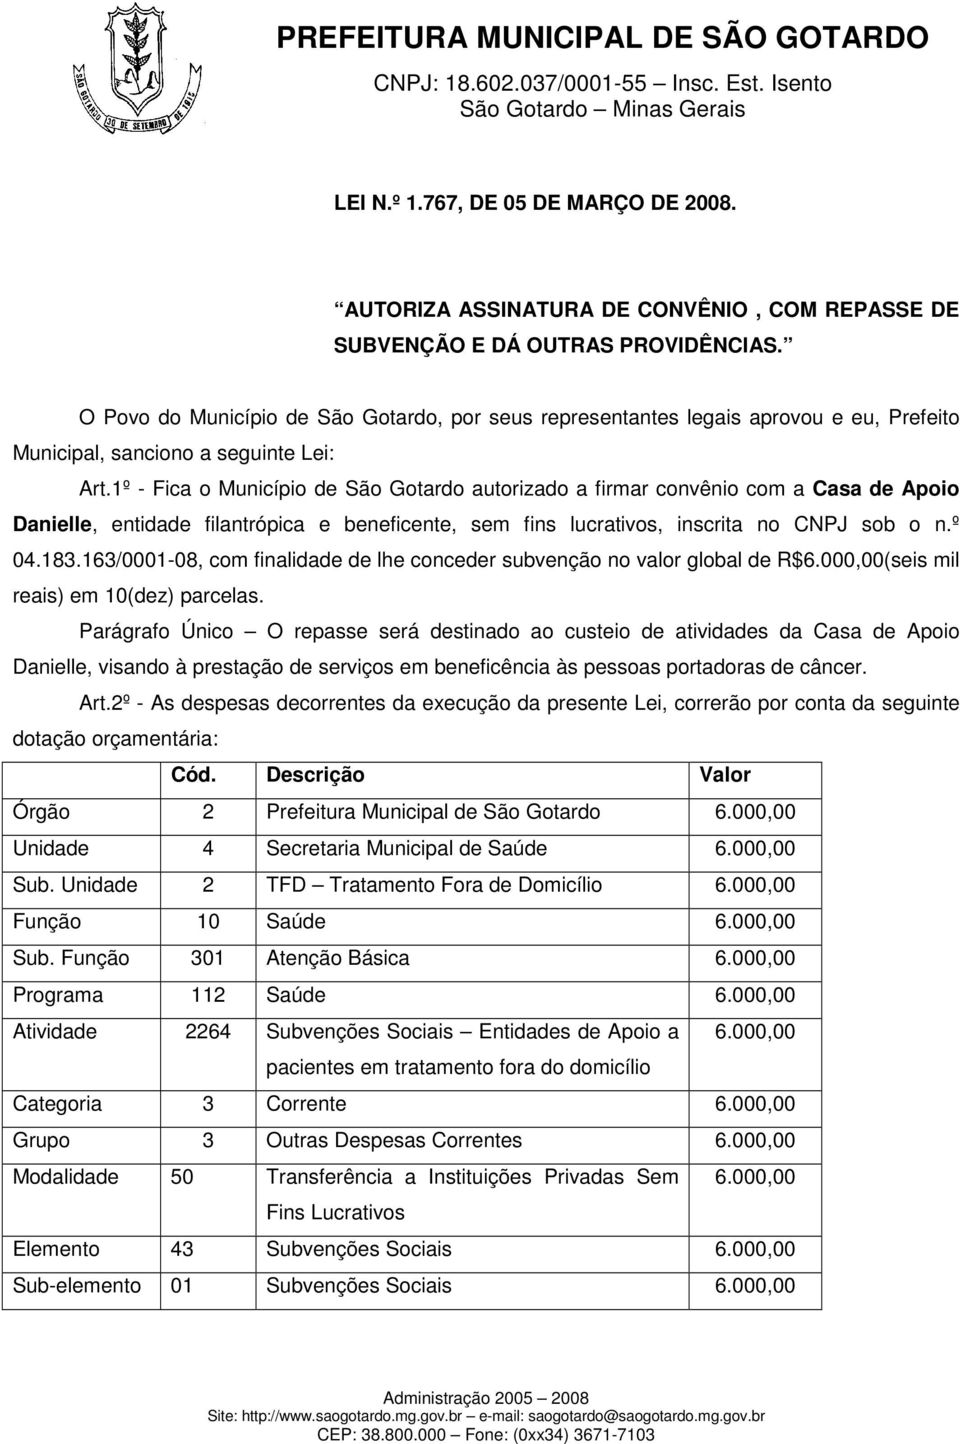 1º - Fica o Município de São Gotardo autorizado a firmar convênio com a Casa de Apoio Danielle, entidade filantrópica e beneficente, sem fins lucrativos, inscrita no CNPJ sob o n.º 04.183.